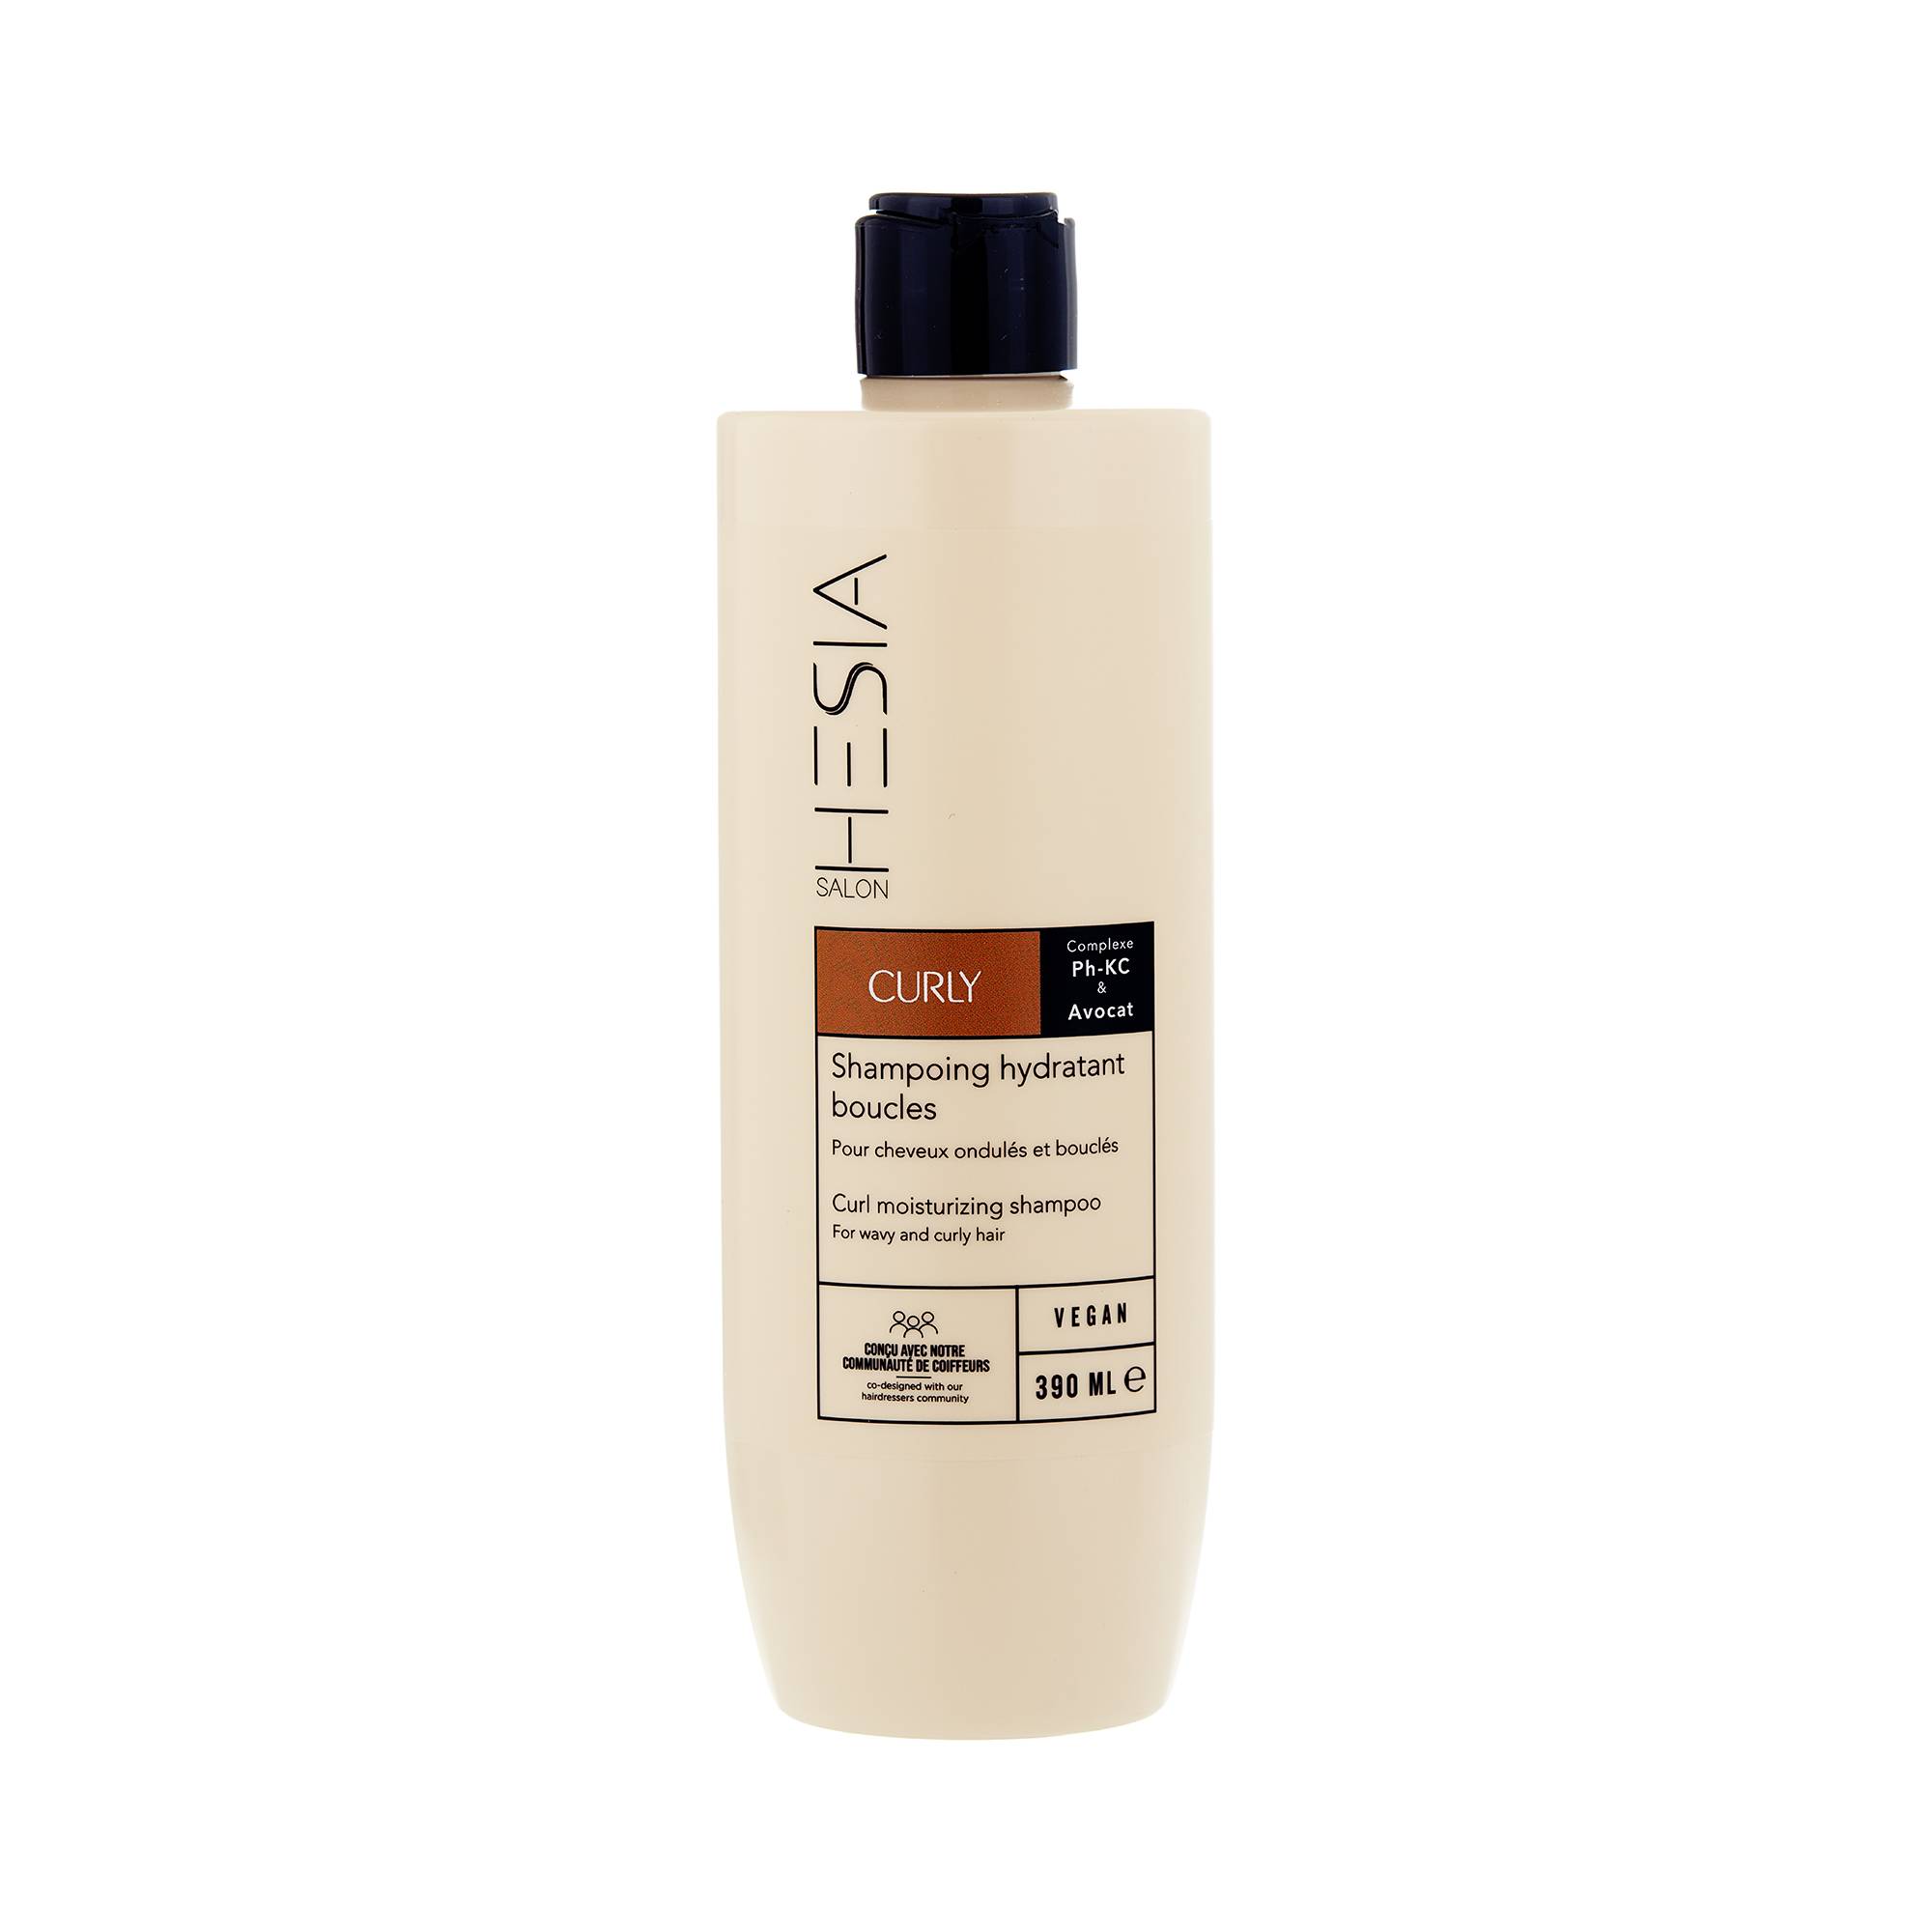 Shampoing hydratant boucles Curly de la marque HESIA Salon Contenance 390ml - 1